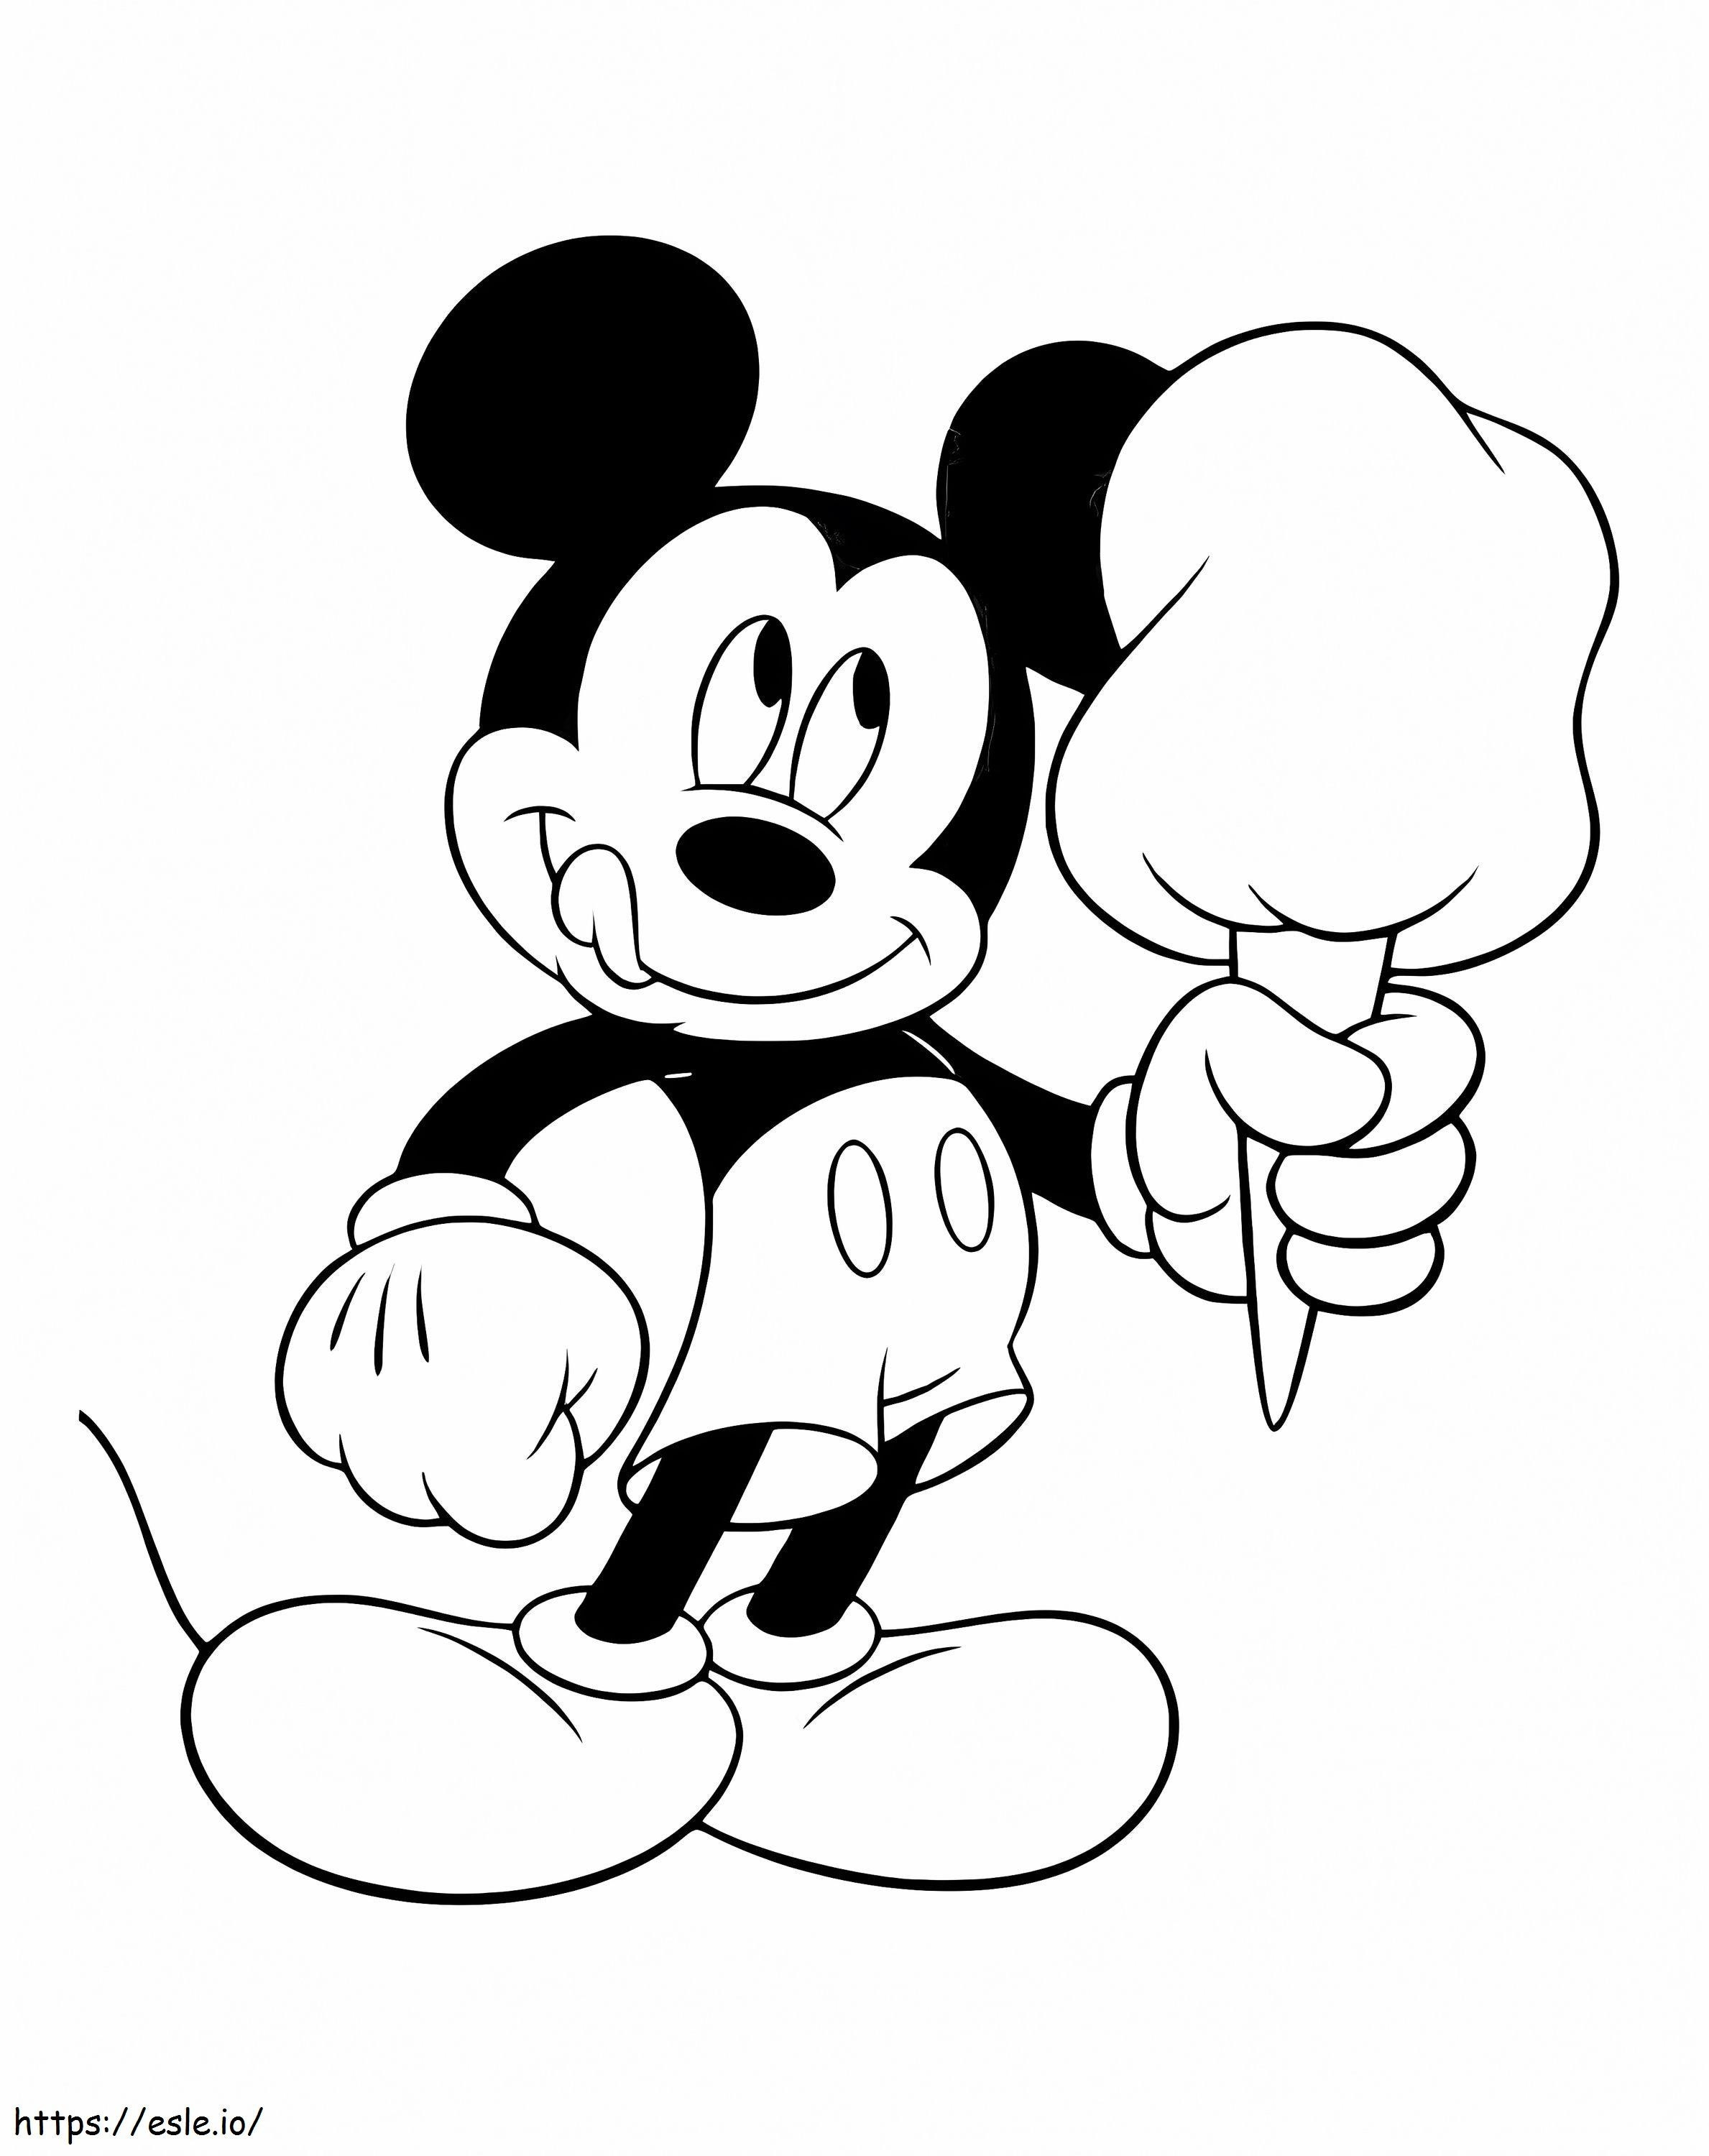 Mickey Mouse sosteniendo algodón de azúcar para colorear